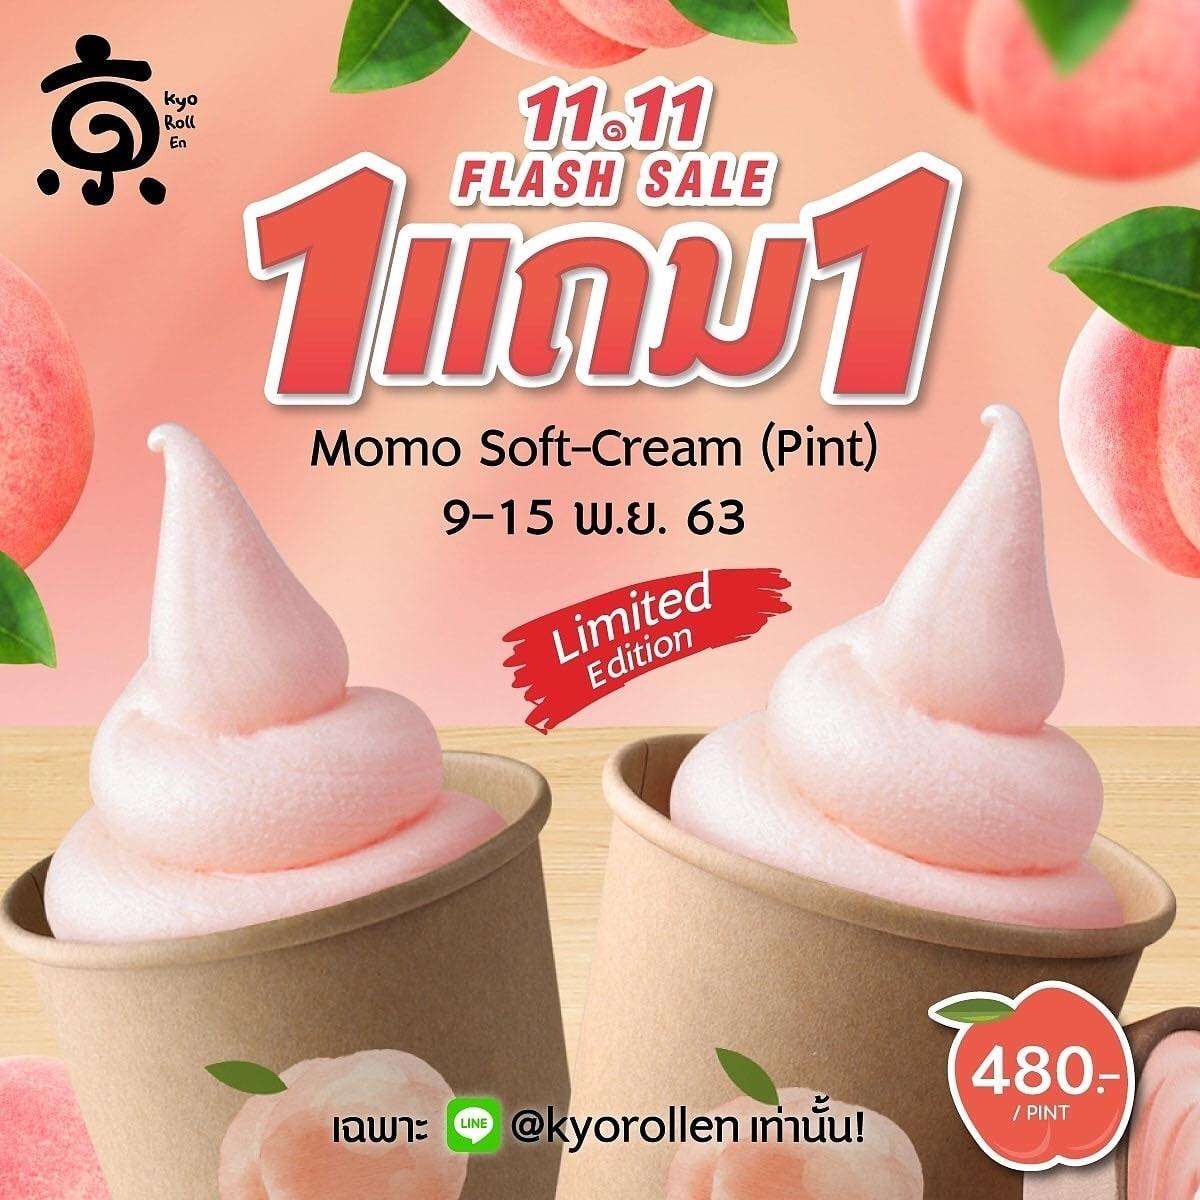 Momo Soft-Cream